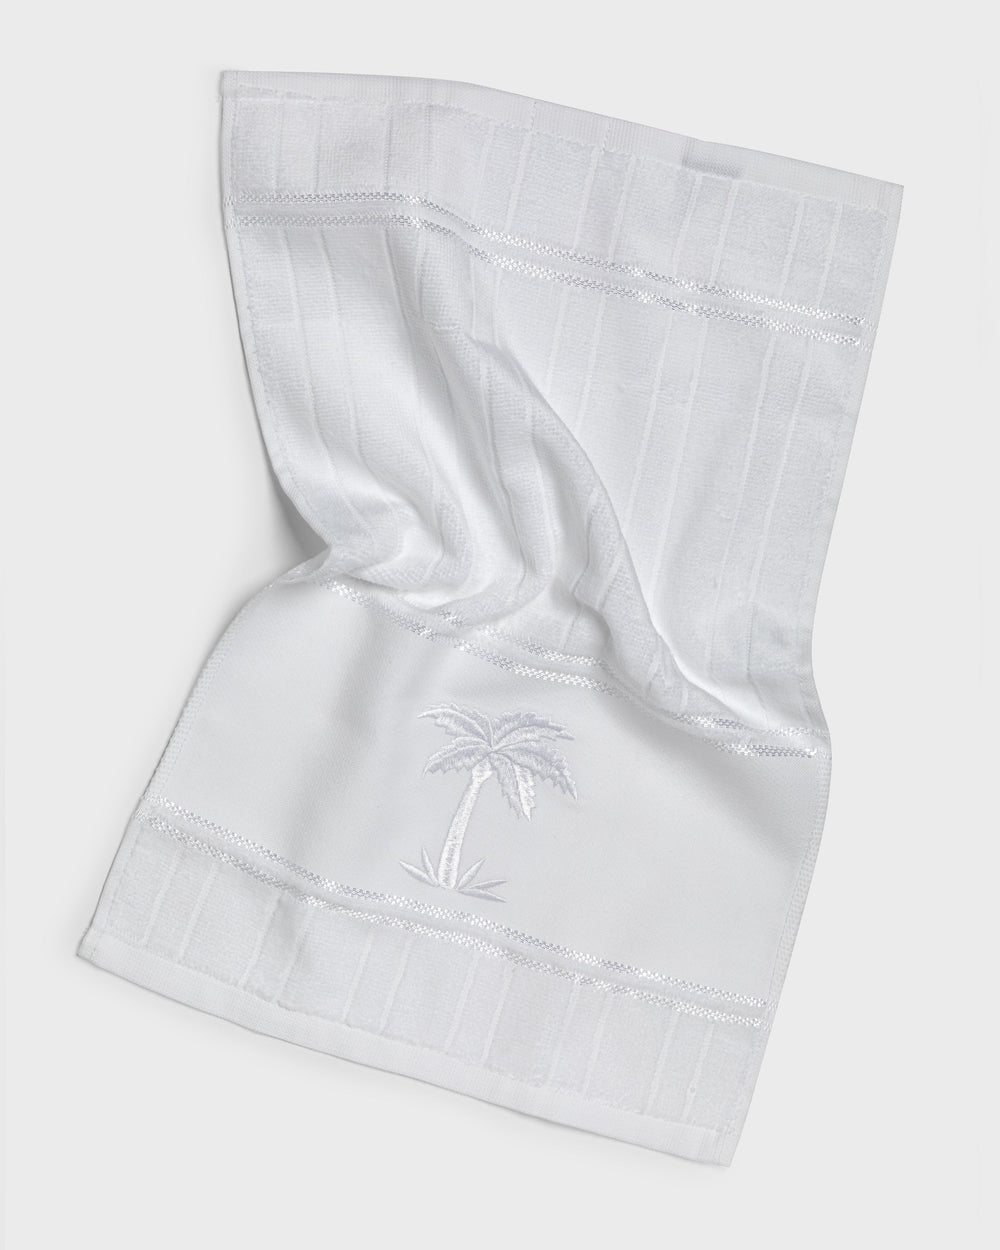 Tania Bulhoes Cloth Hand Towel Coqueiro 3 Piece Set